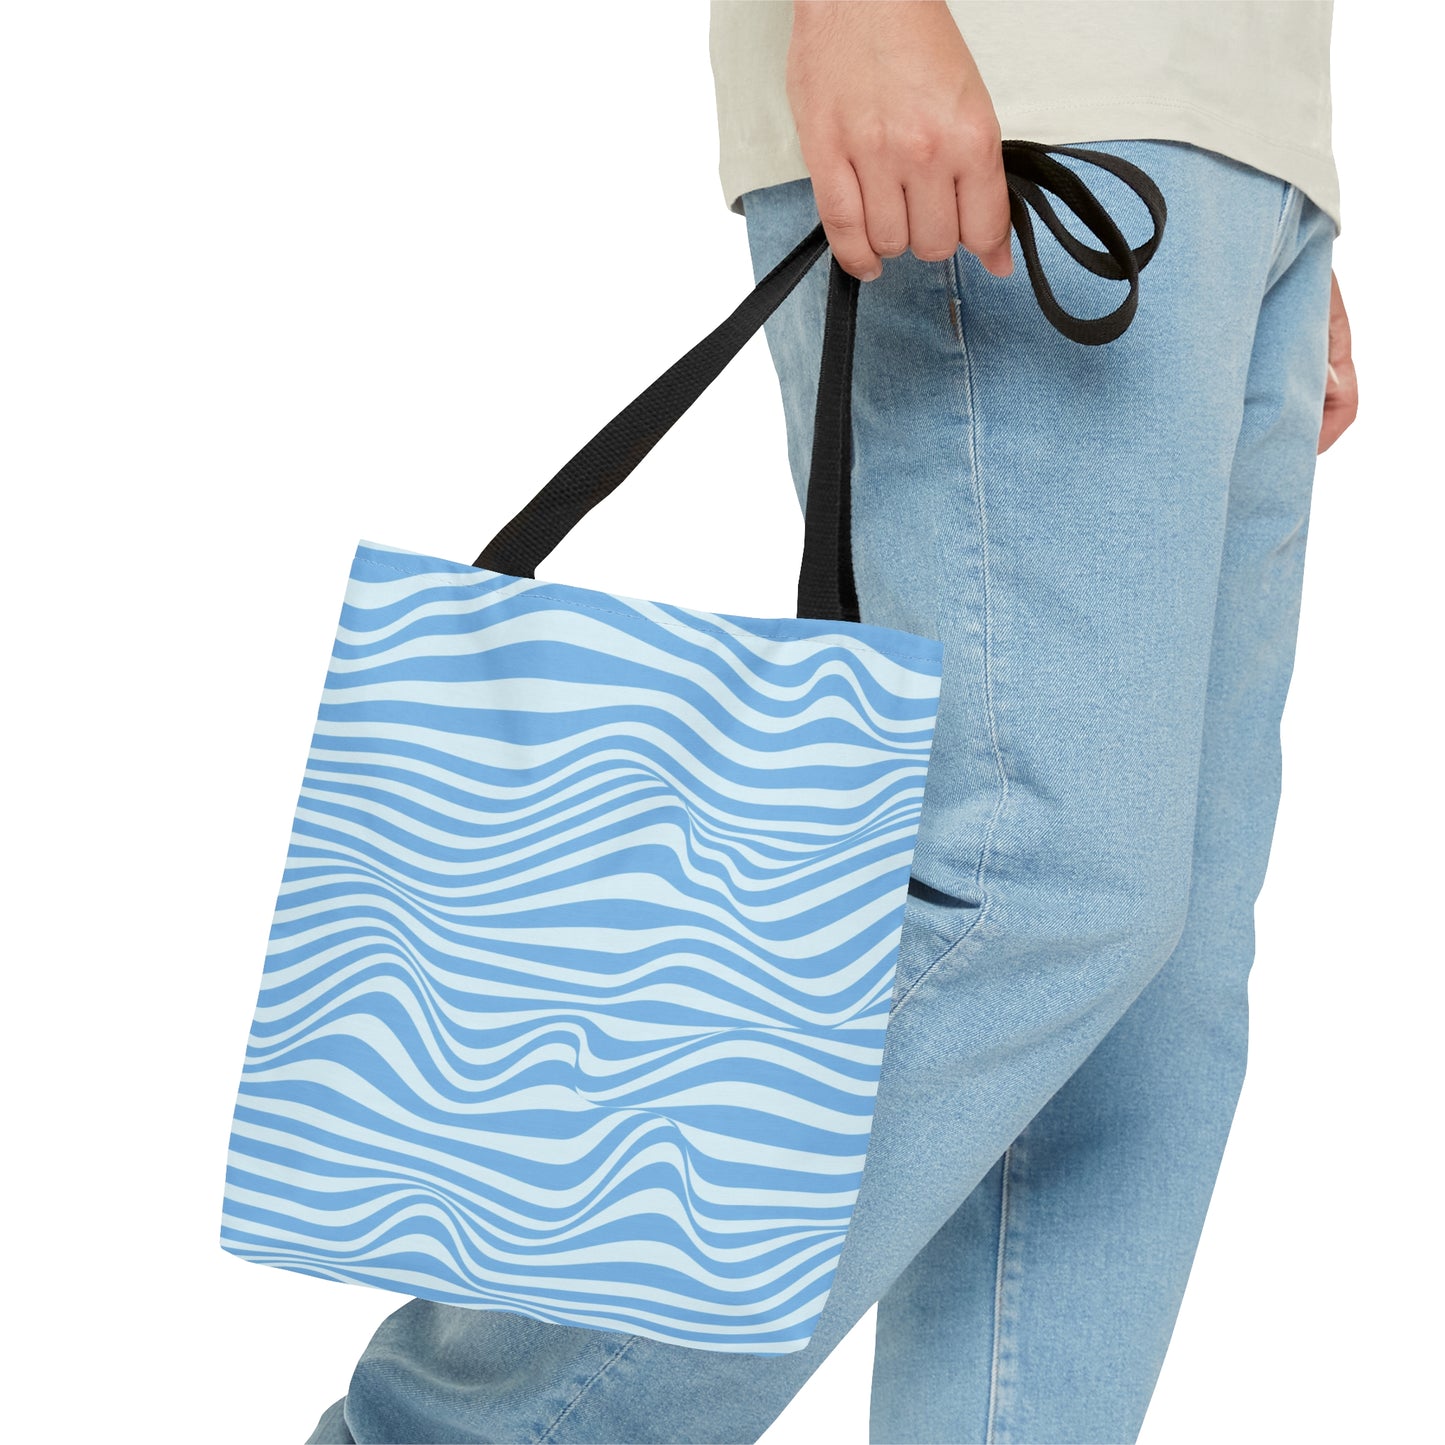 Blue Waves - Tote Bag